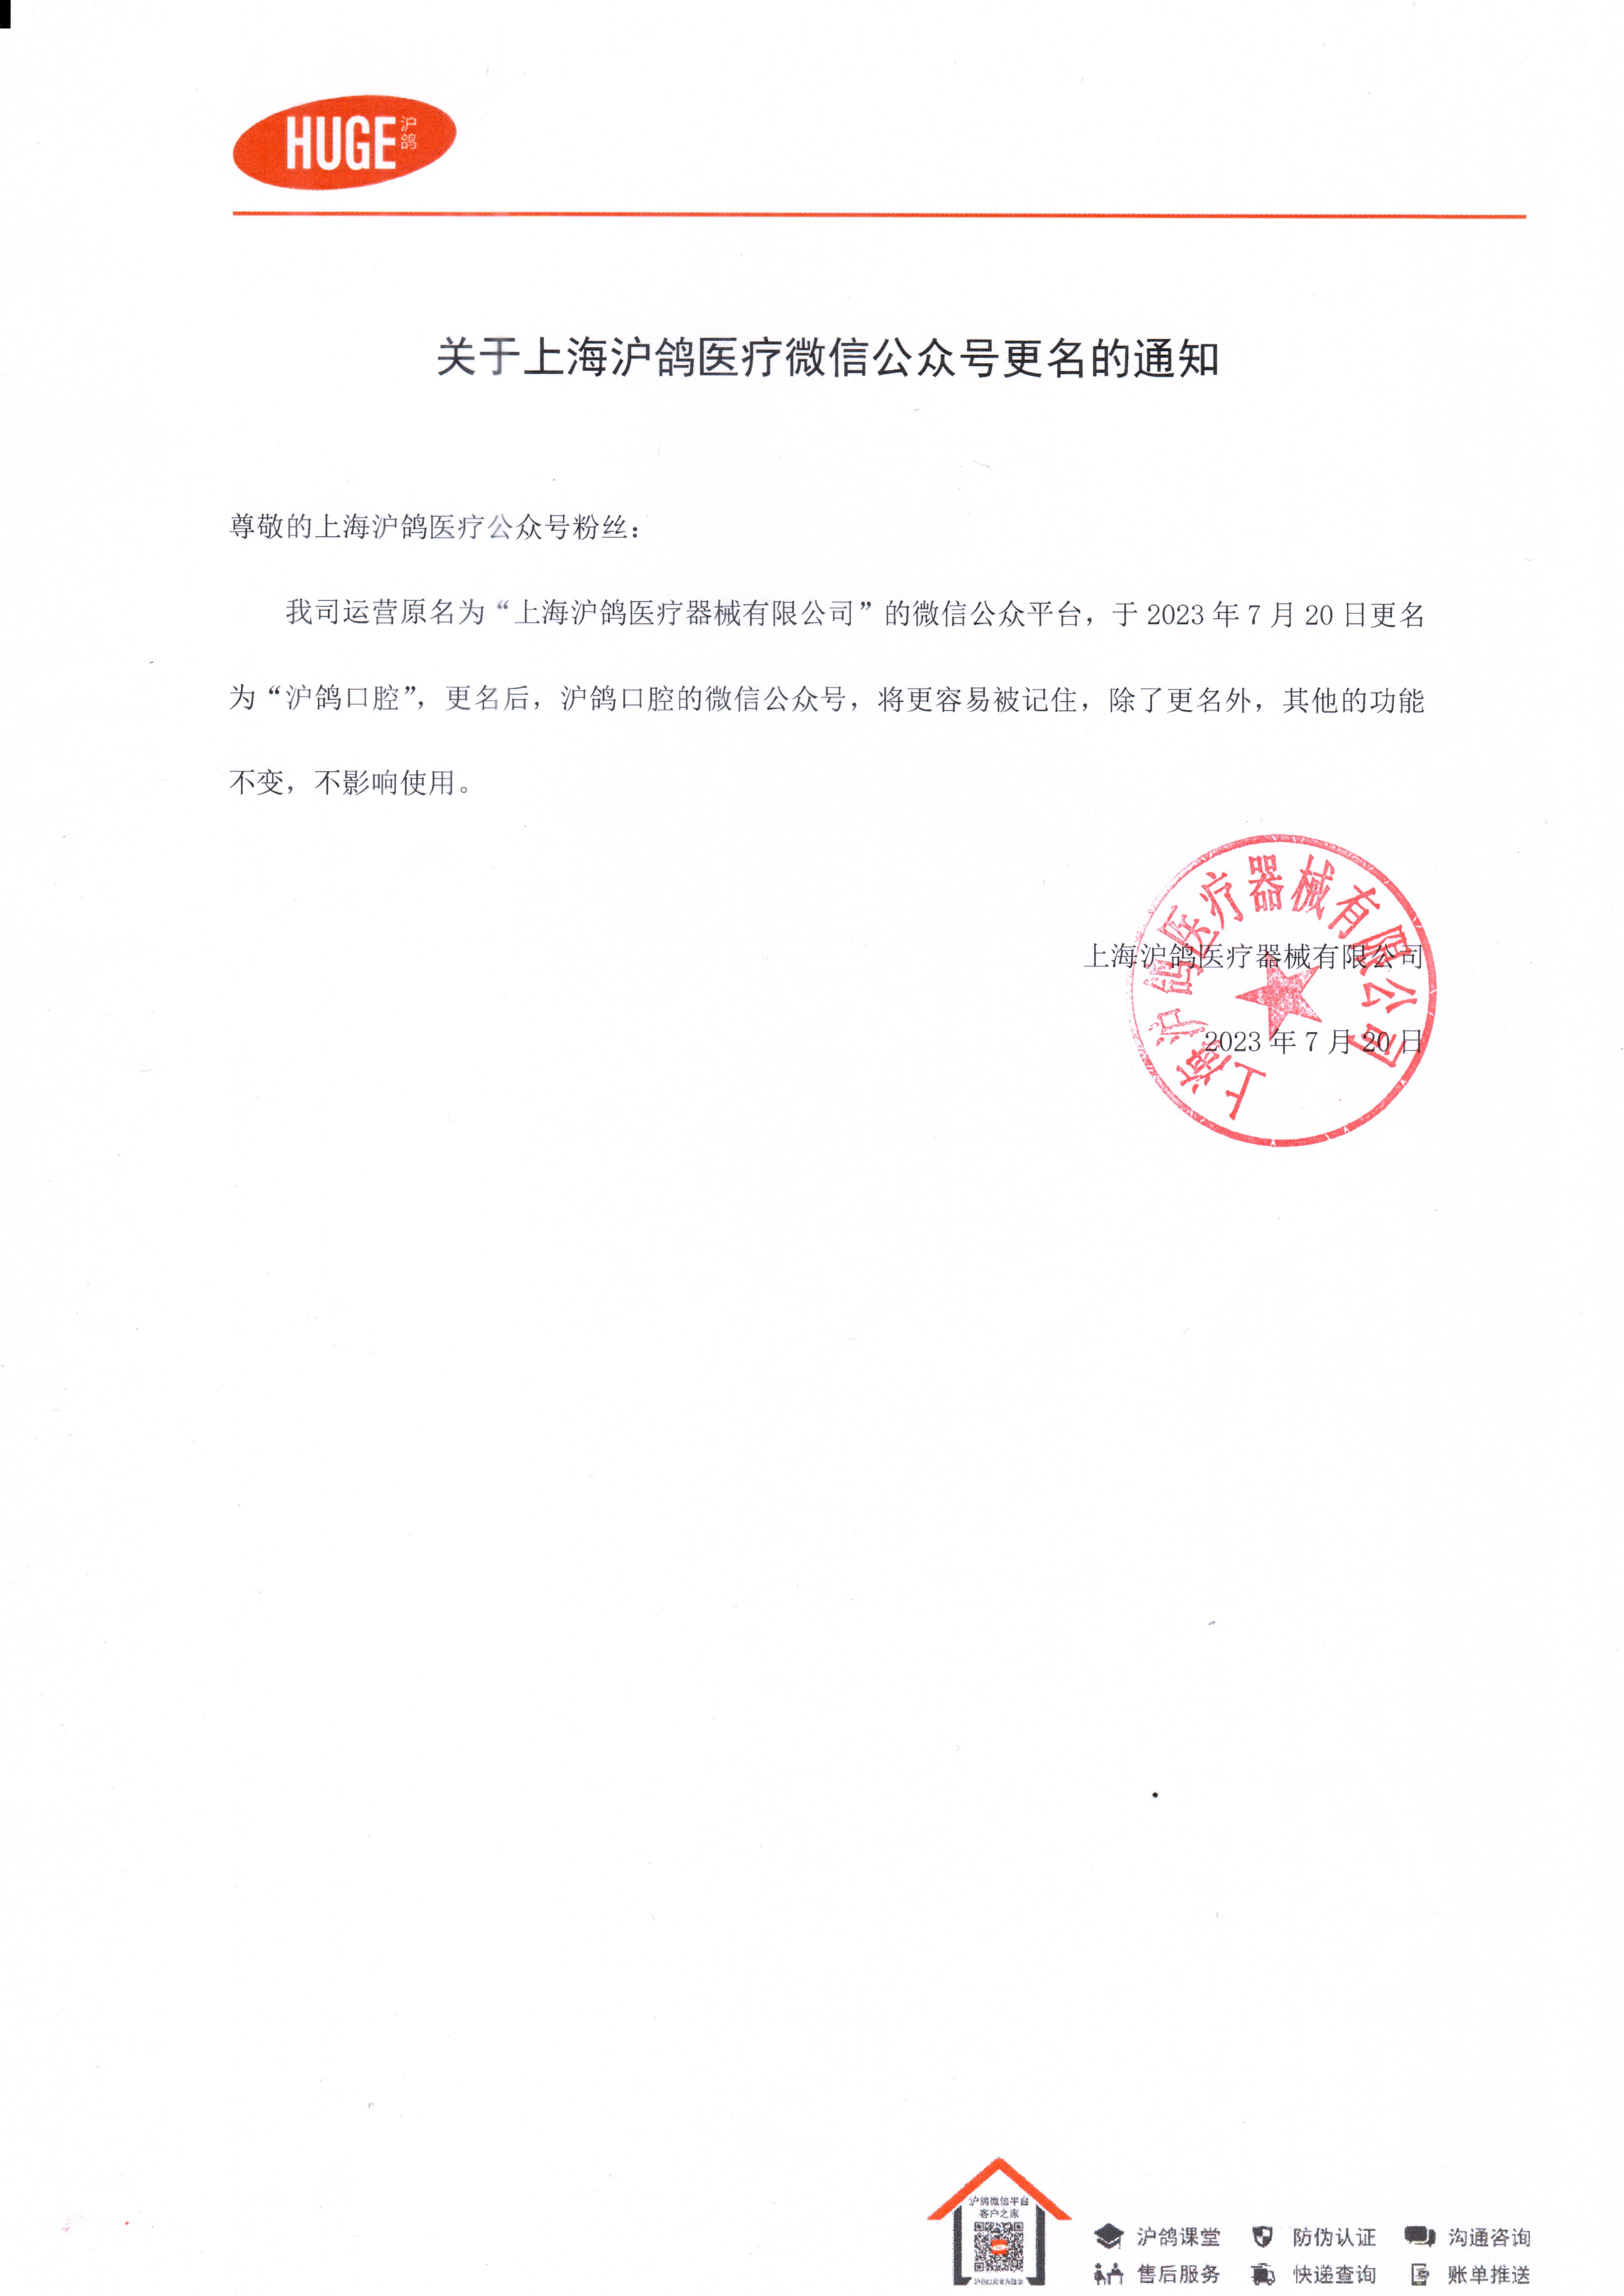 关于上海沪鸽医疗微信公众号更名的通知